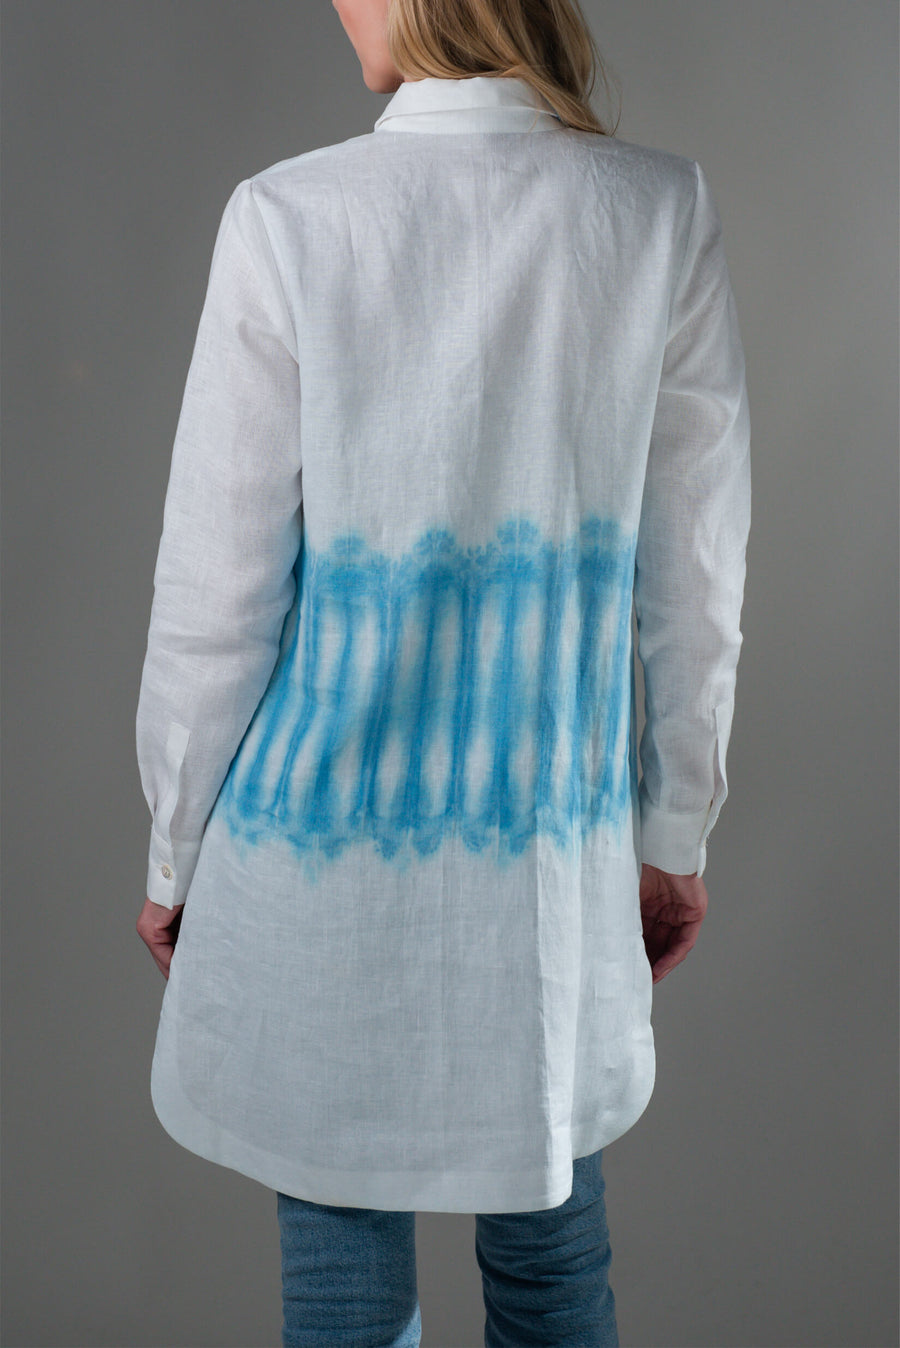 Arashi daljša bela lanena srajca s shibori odtenkom poskrbi za unikaten in edinstven izgled, poleg tega je tudi iz naravnih materialov